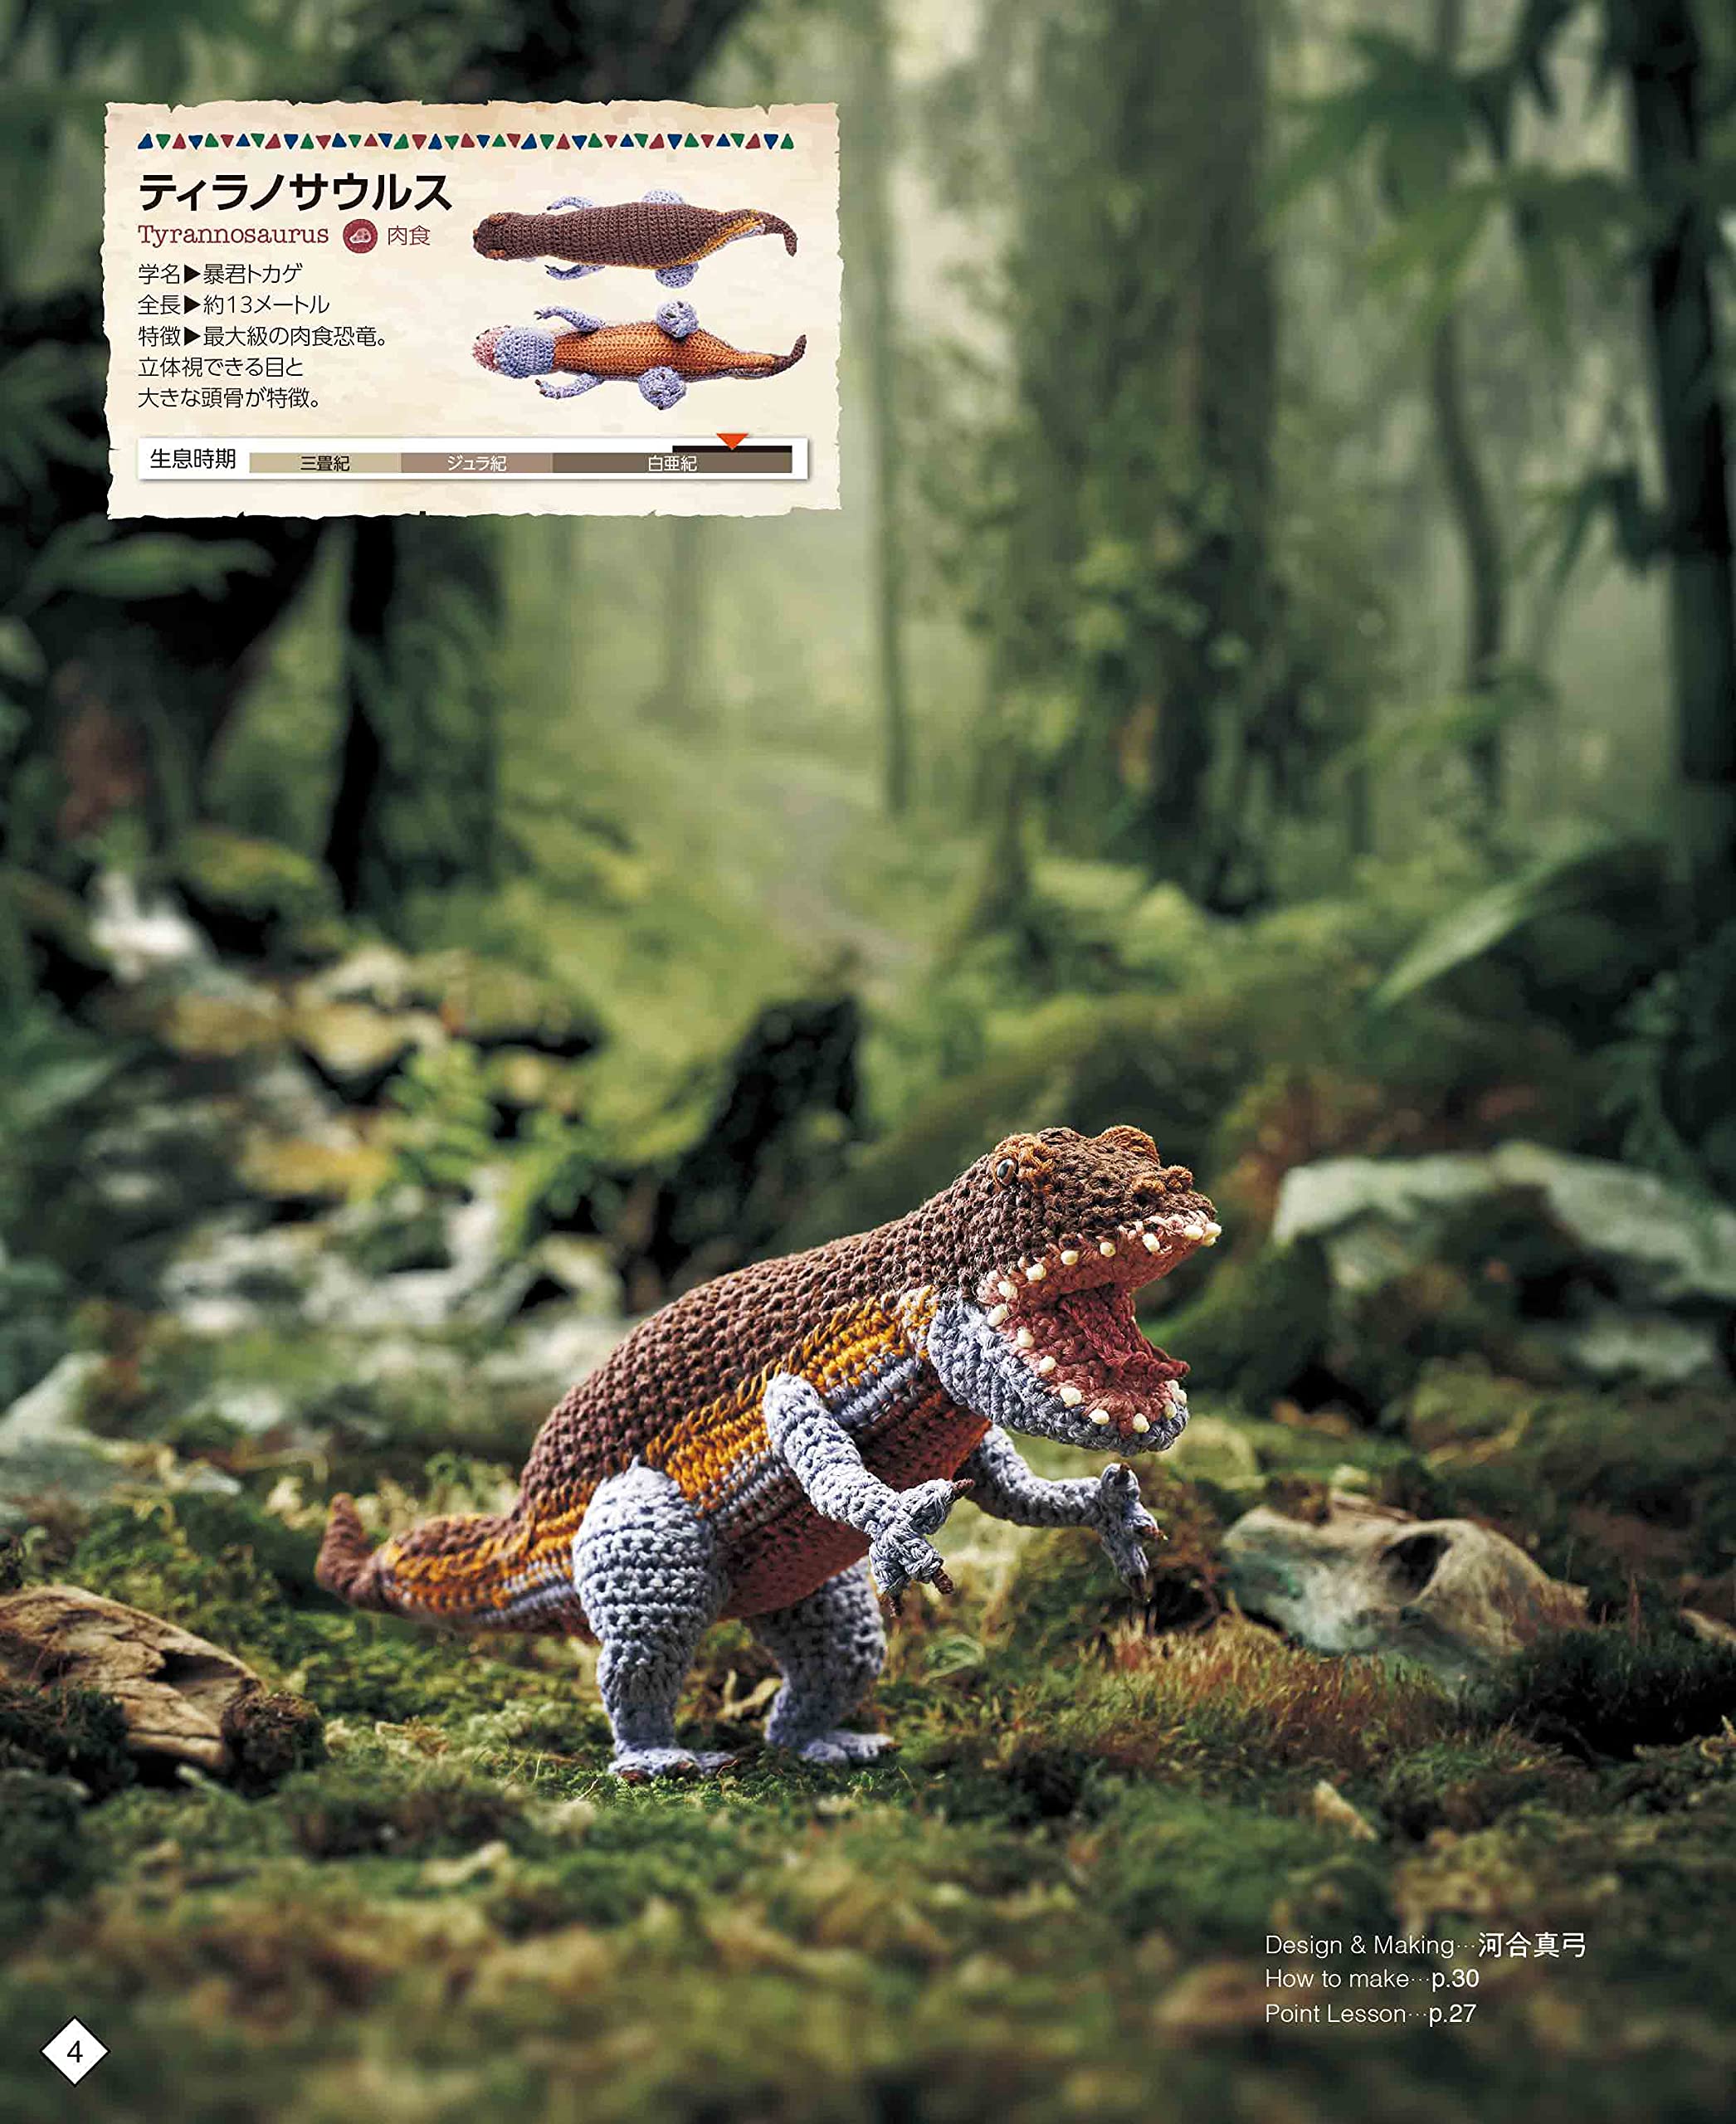 かぎ針編み 刺しゅう糸で編む ミニチュア恐竜図鑑